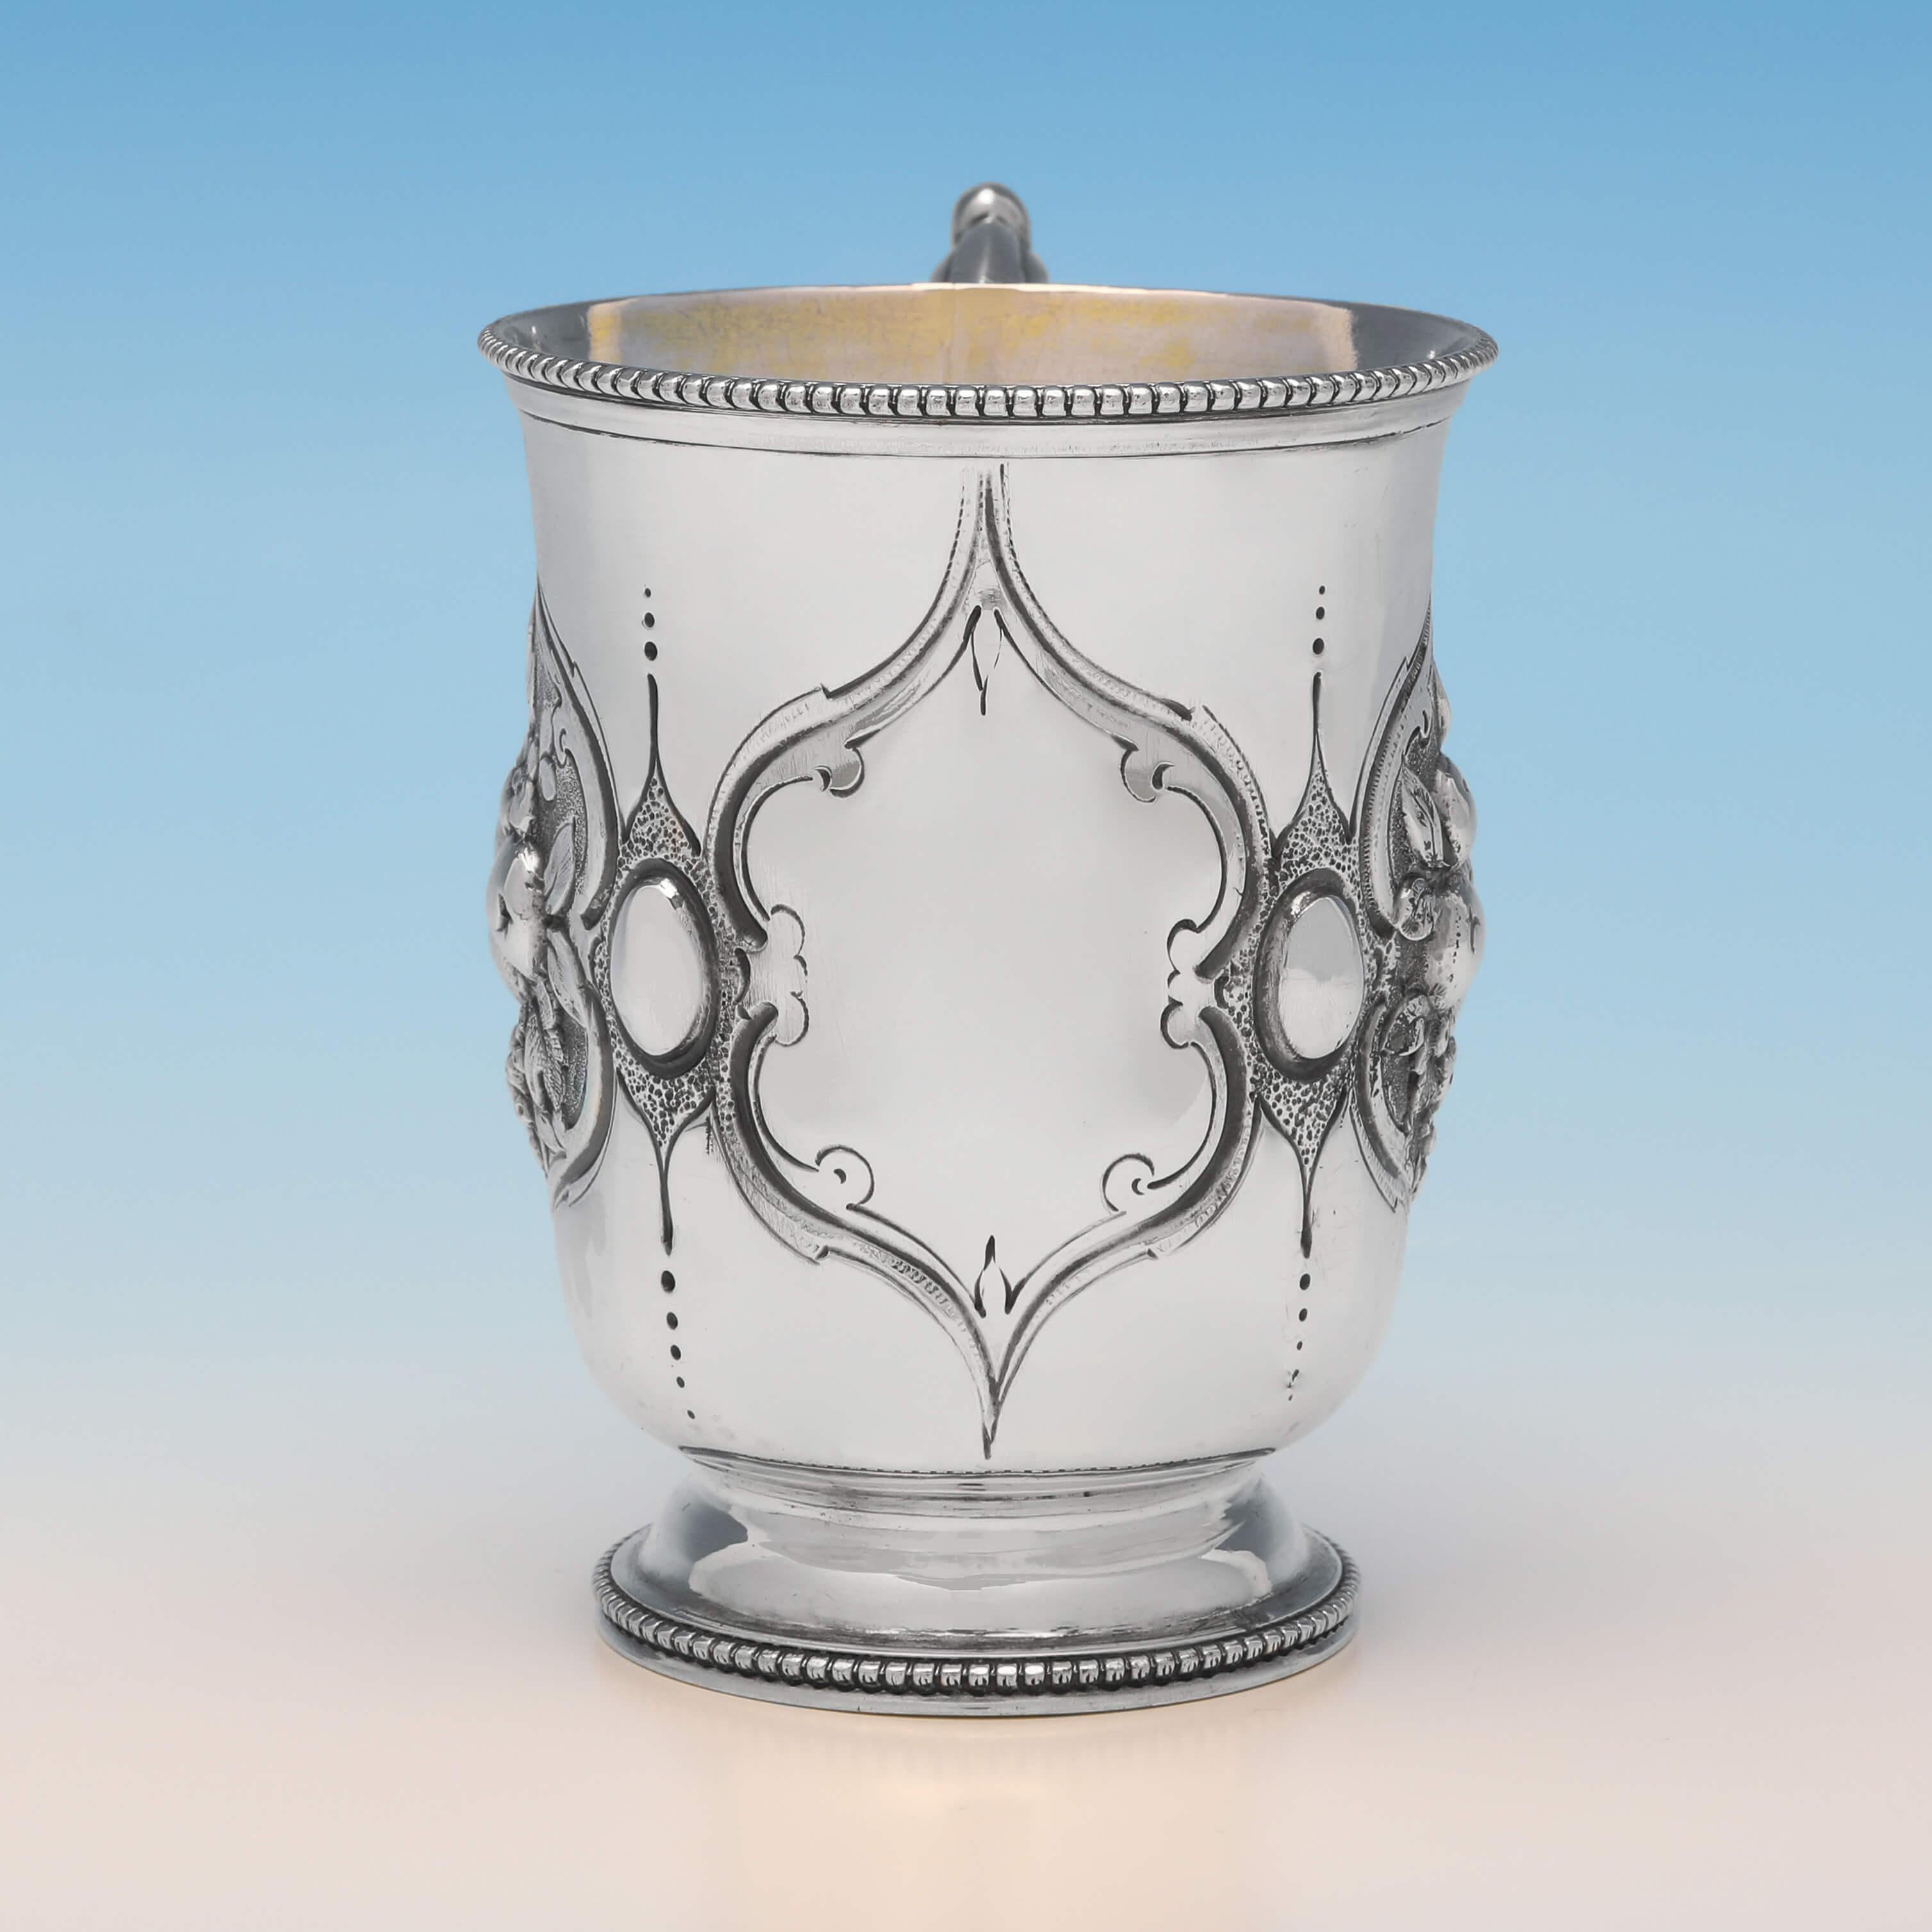 Marcada en Londres en 1866 por Henry Holland, esta atractiva taza de bautizo victoriana de plata de ley antigua presenta decoración grabada y cincelada en los laterales, interior dorado y bordes de cuentas. La taza de bautizo mide 9,5 cm de altura,